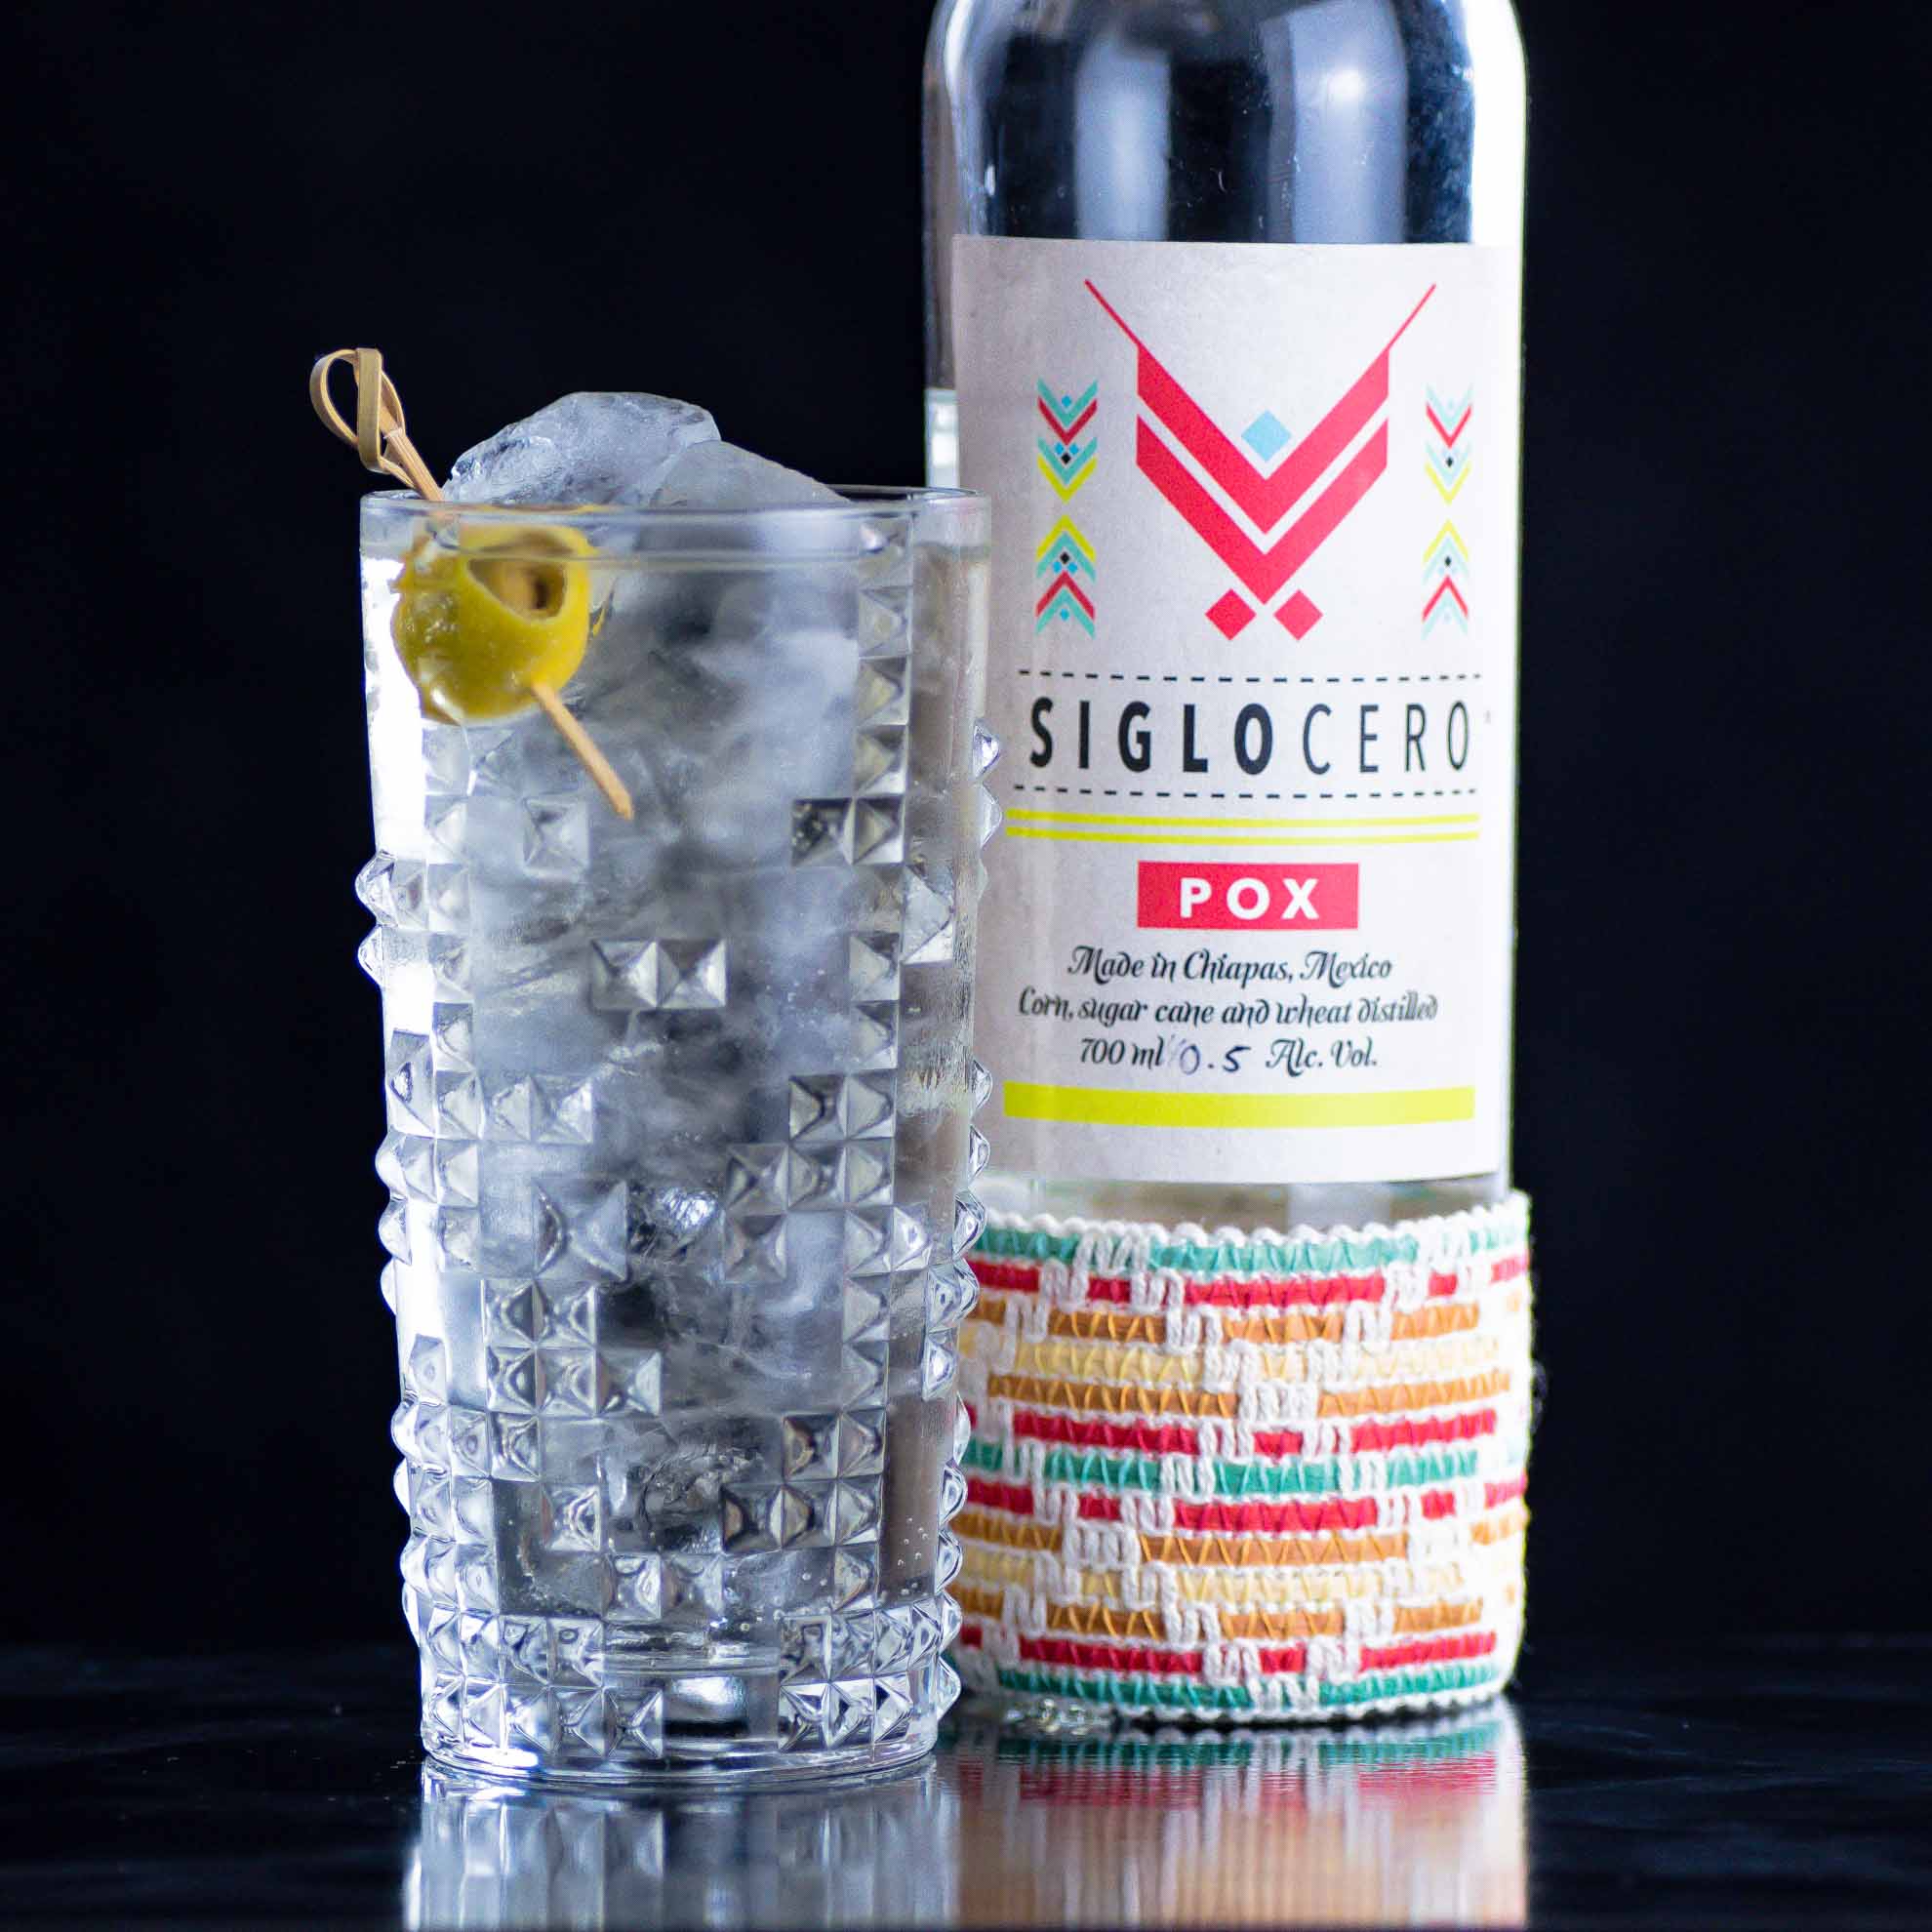 Einen unserer spannendsten Dirty Martini Highballs im Test mixen wir mit Siglo Cero Pox statt Gin.